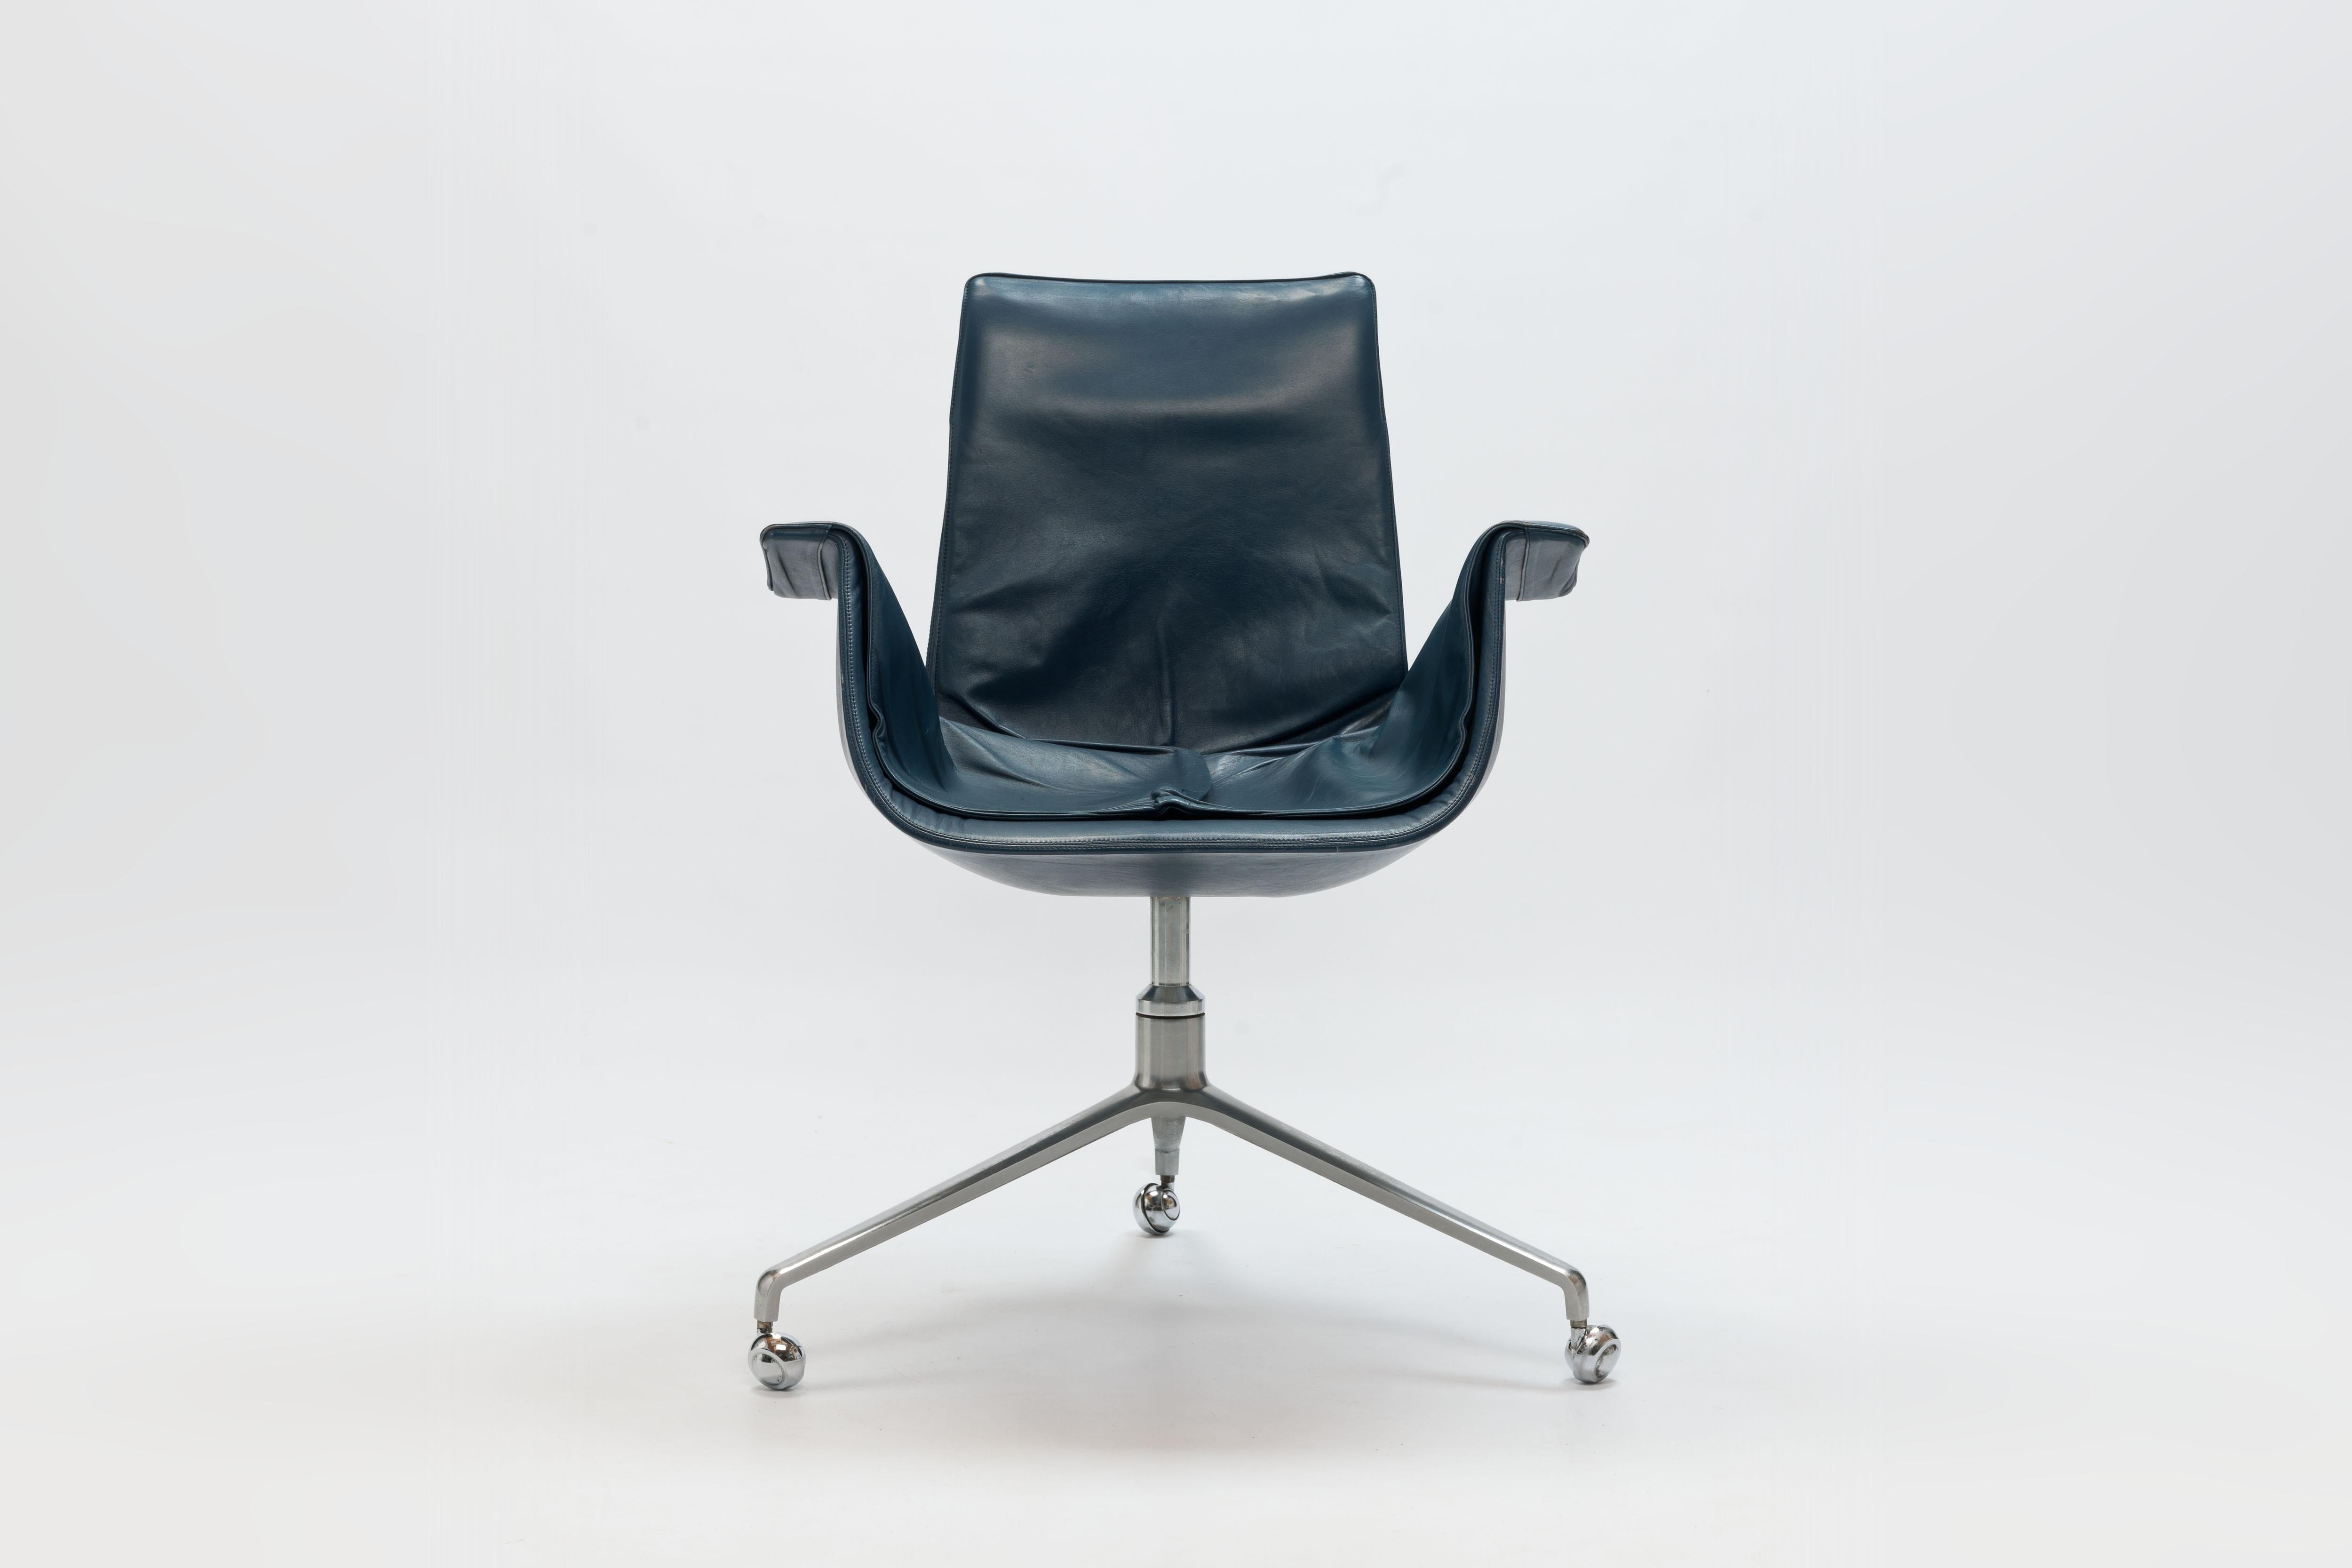  Tulip Bird Desk Chair by Jorgen Kastholm & Preben Fabricius (2 pcs. available)  11